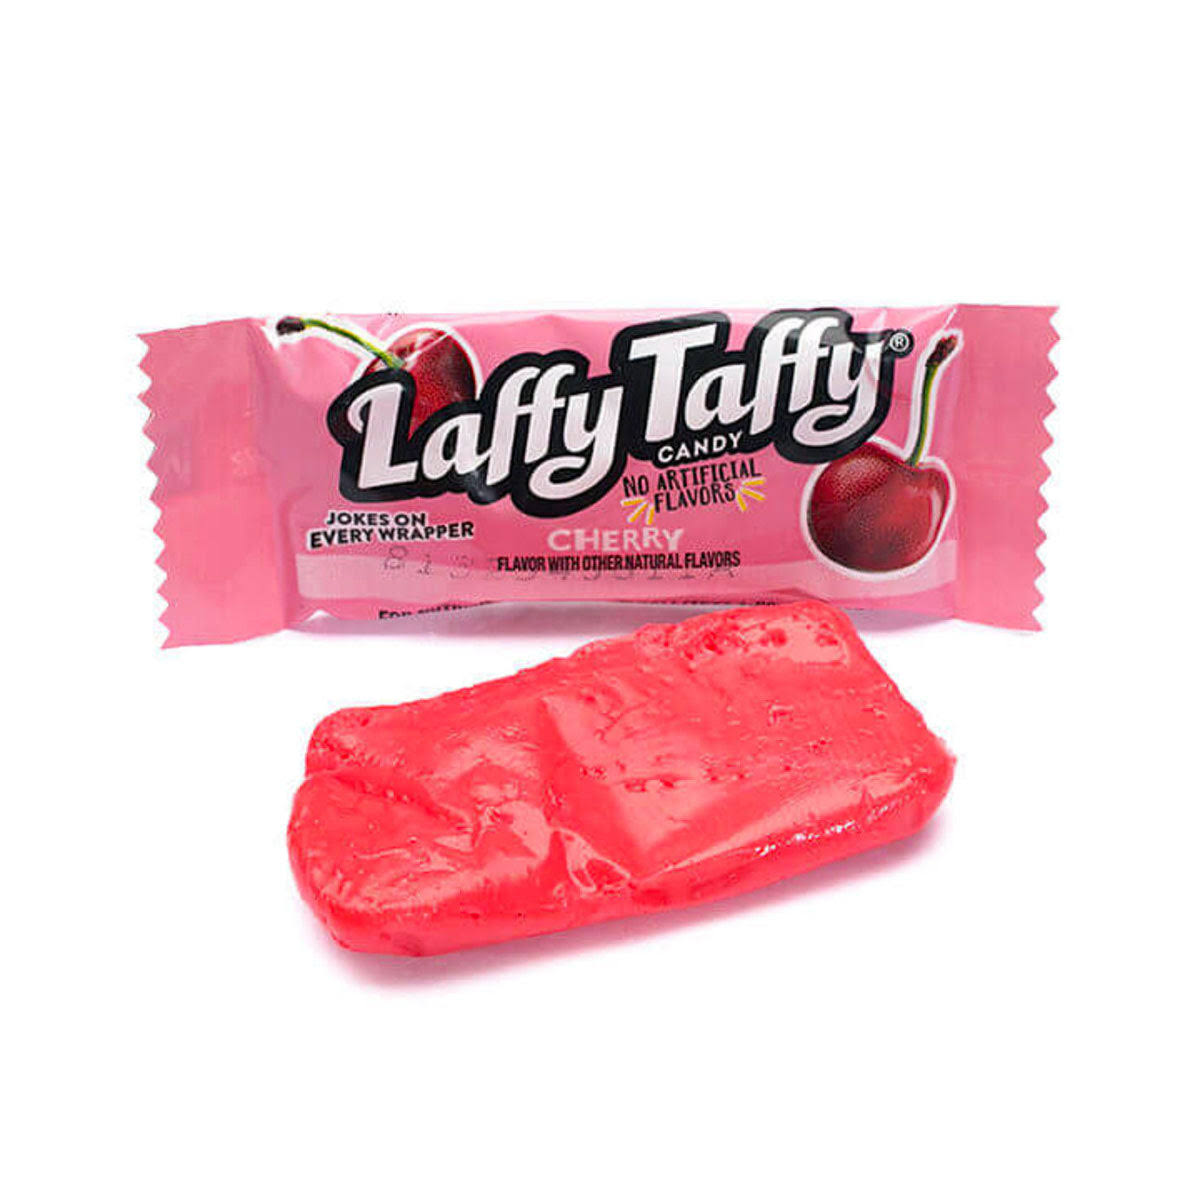 Ferrero Laffy Taffy Cherry Candy - 1 Each